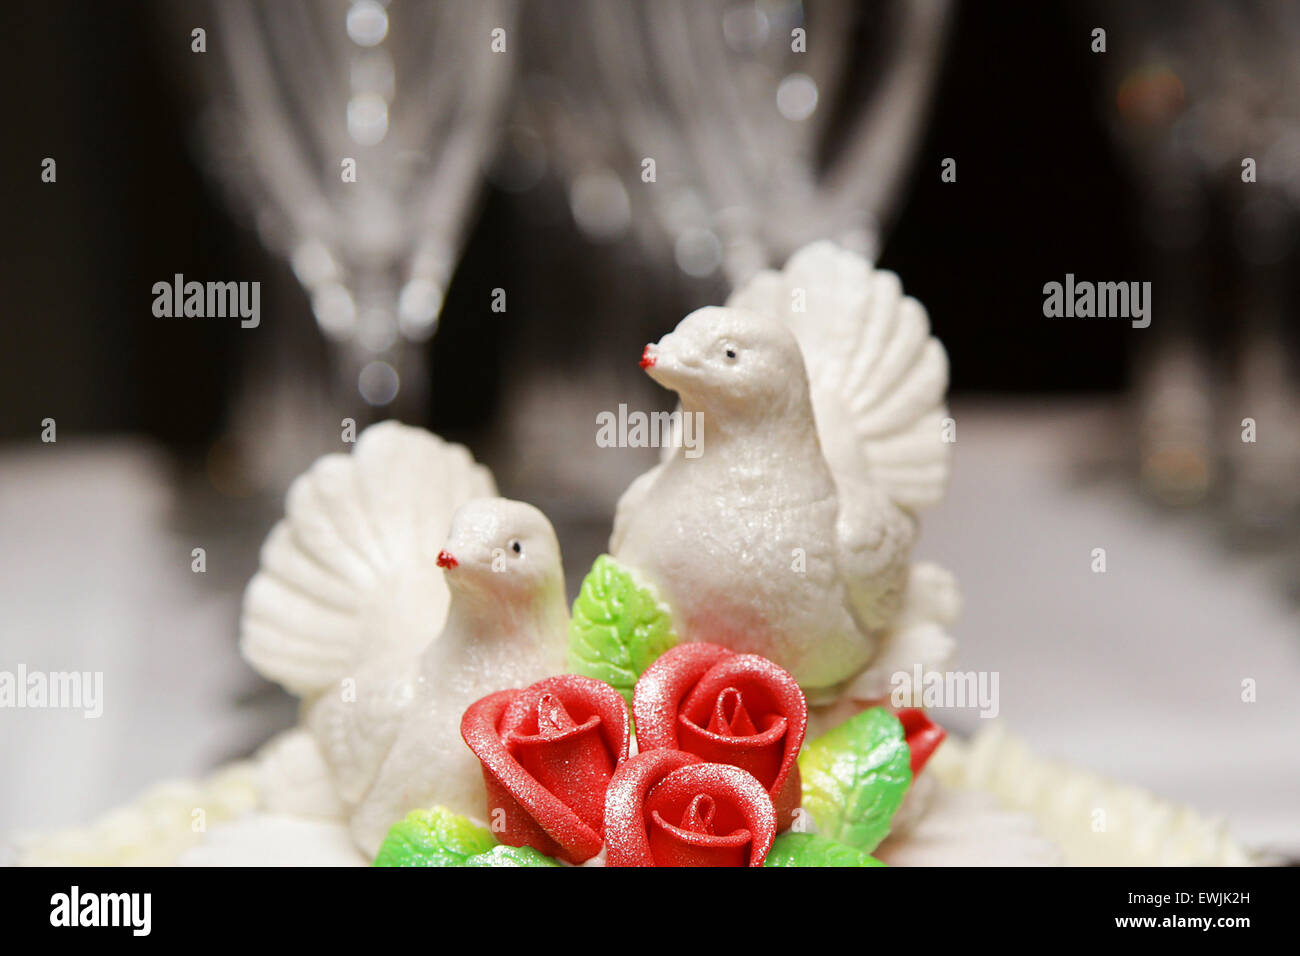 Hochzeits-Auto-Dekoration Von Zwei Weißen Tauben Stockfoto - Bild von  nahaufnahme, nachricht: 20122406